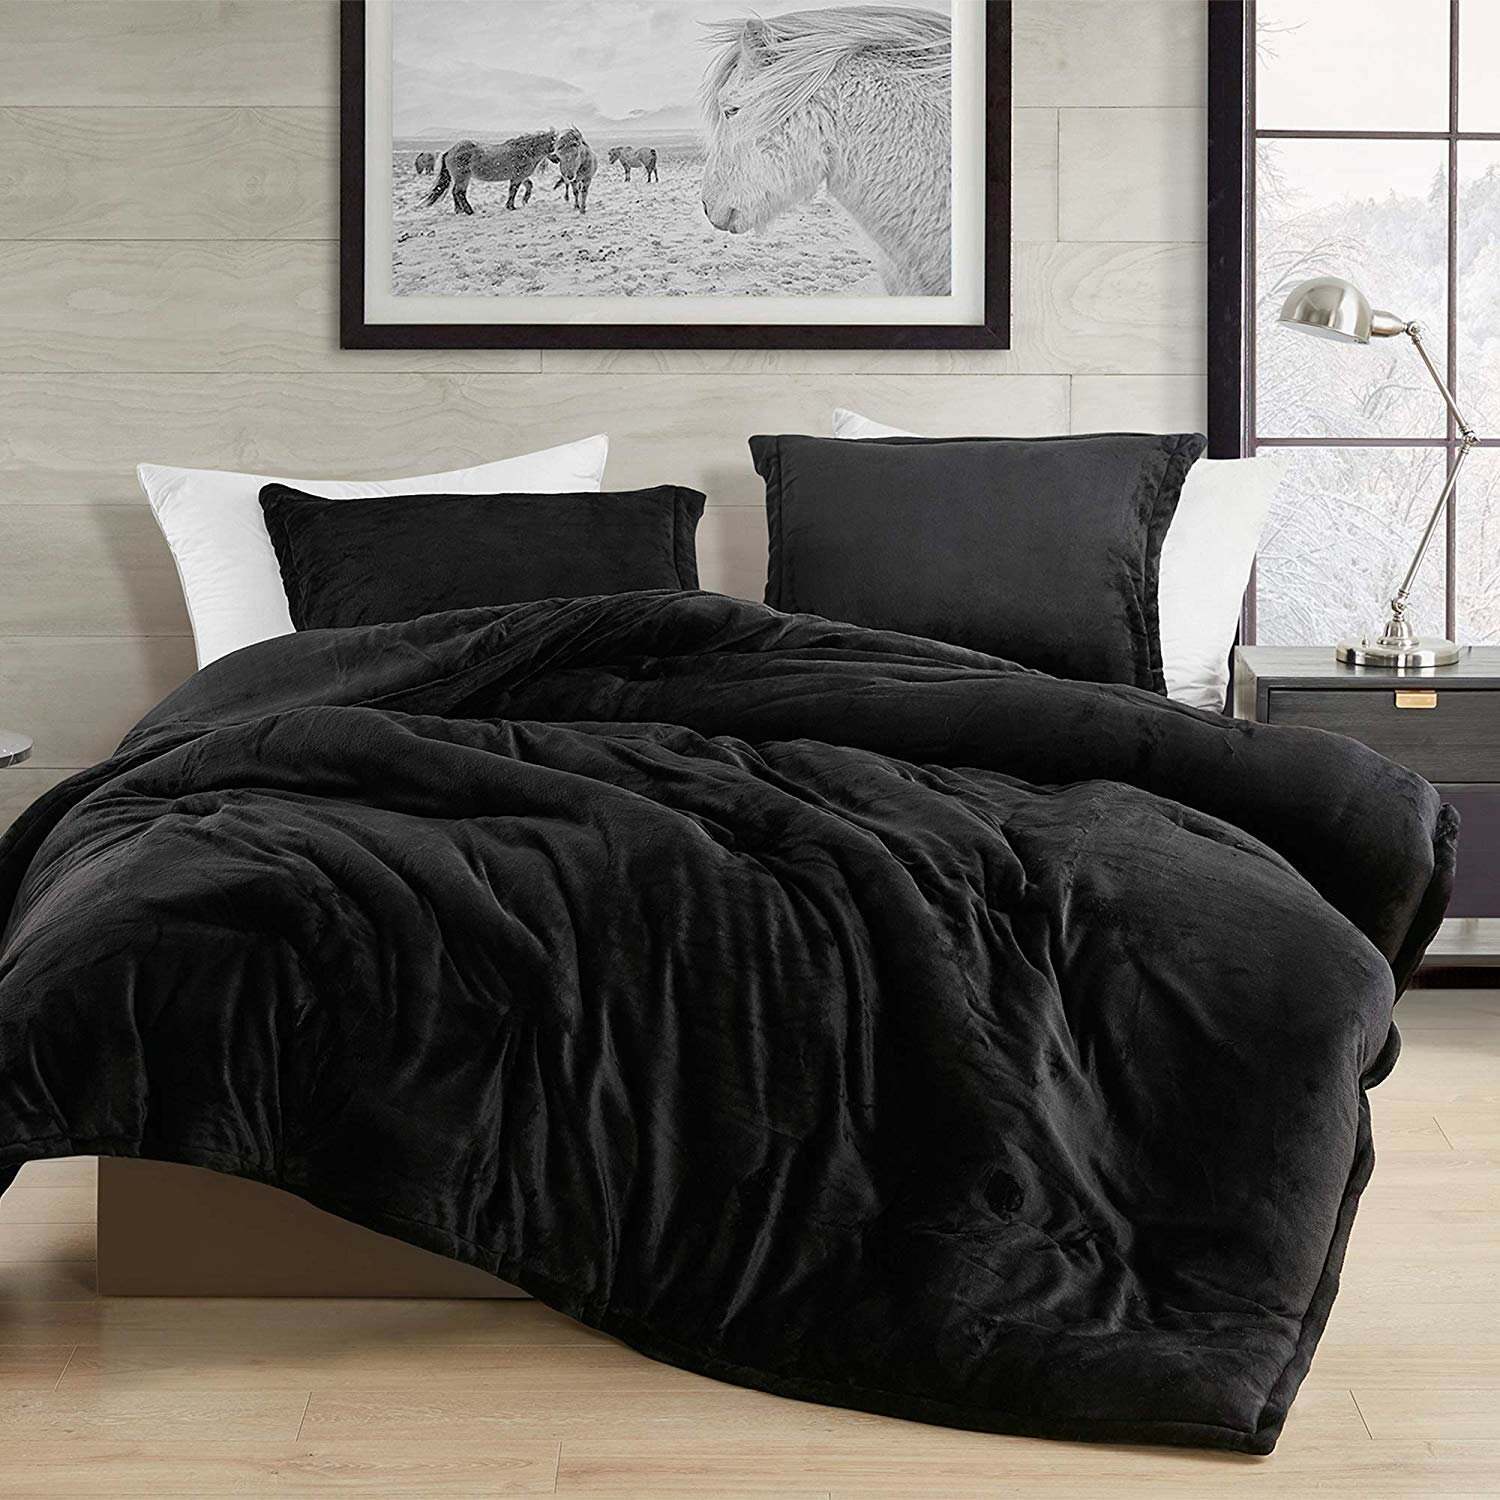 mattress comforter set